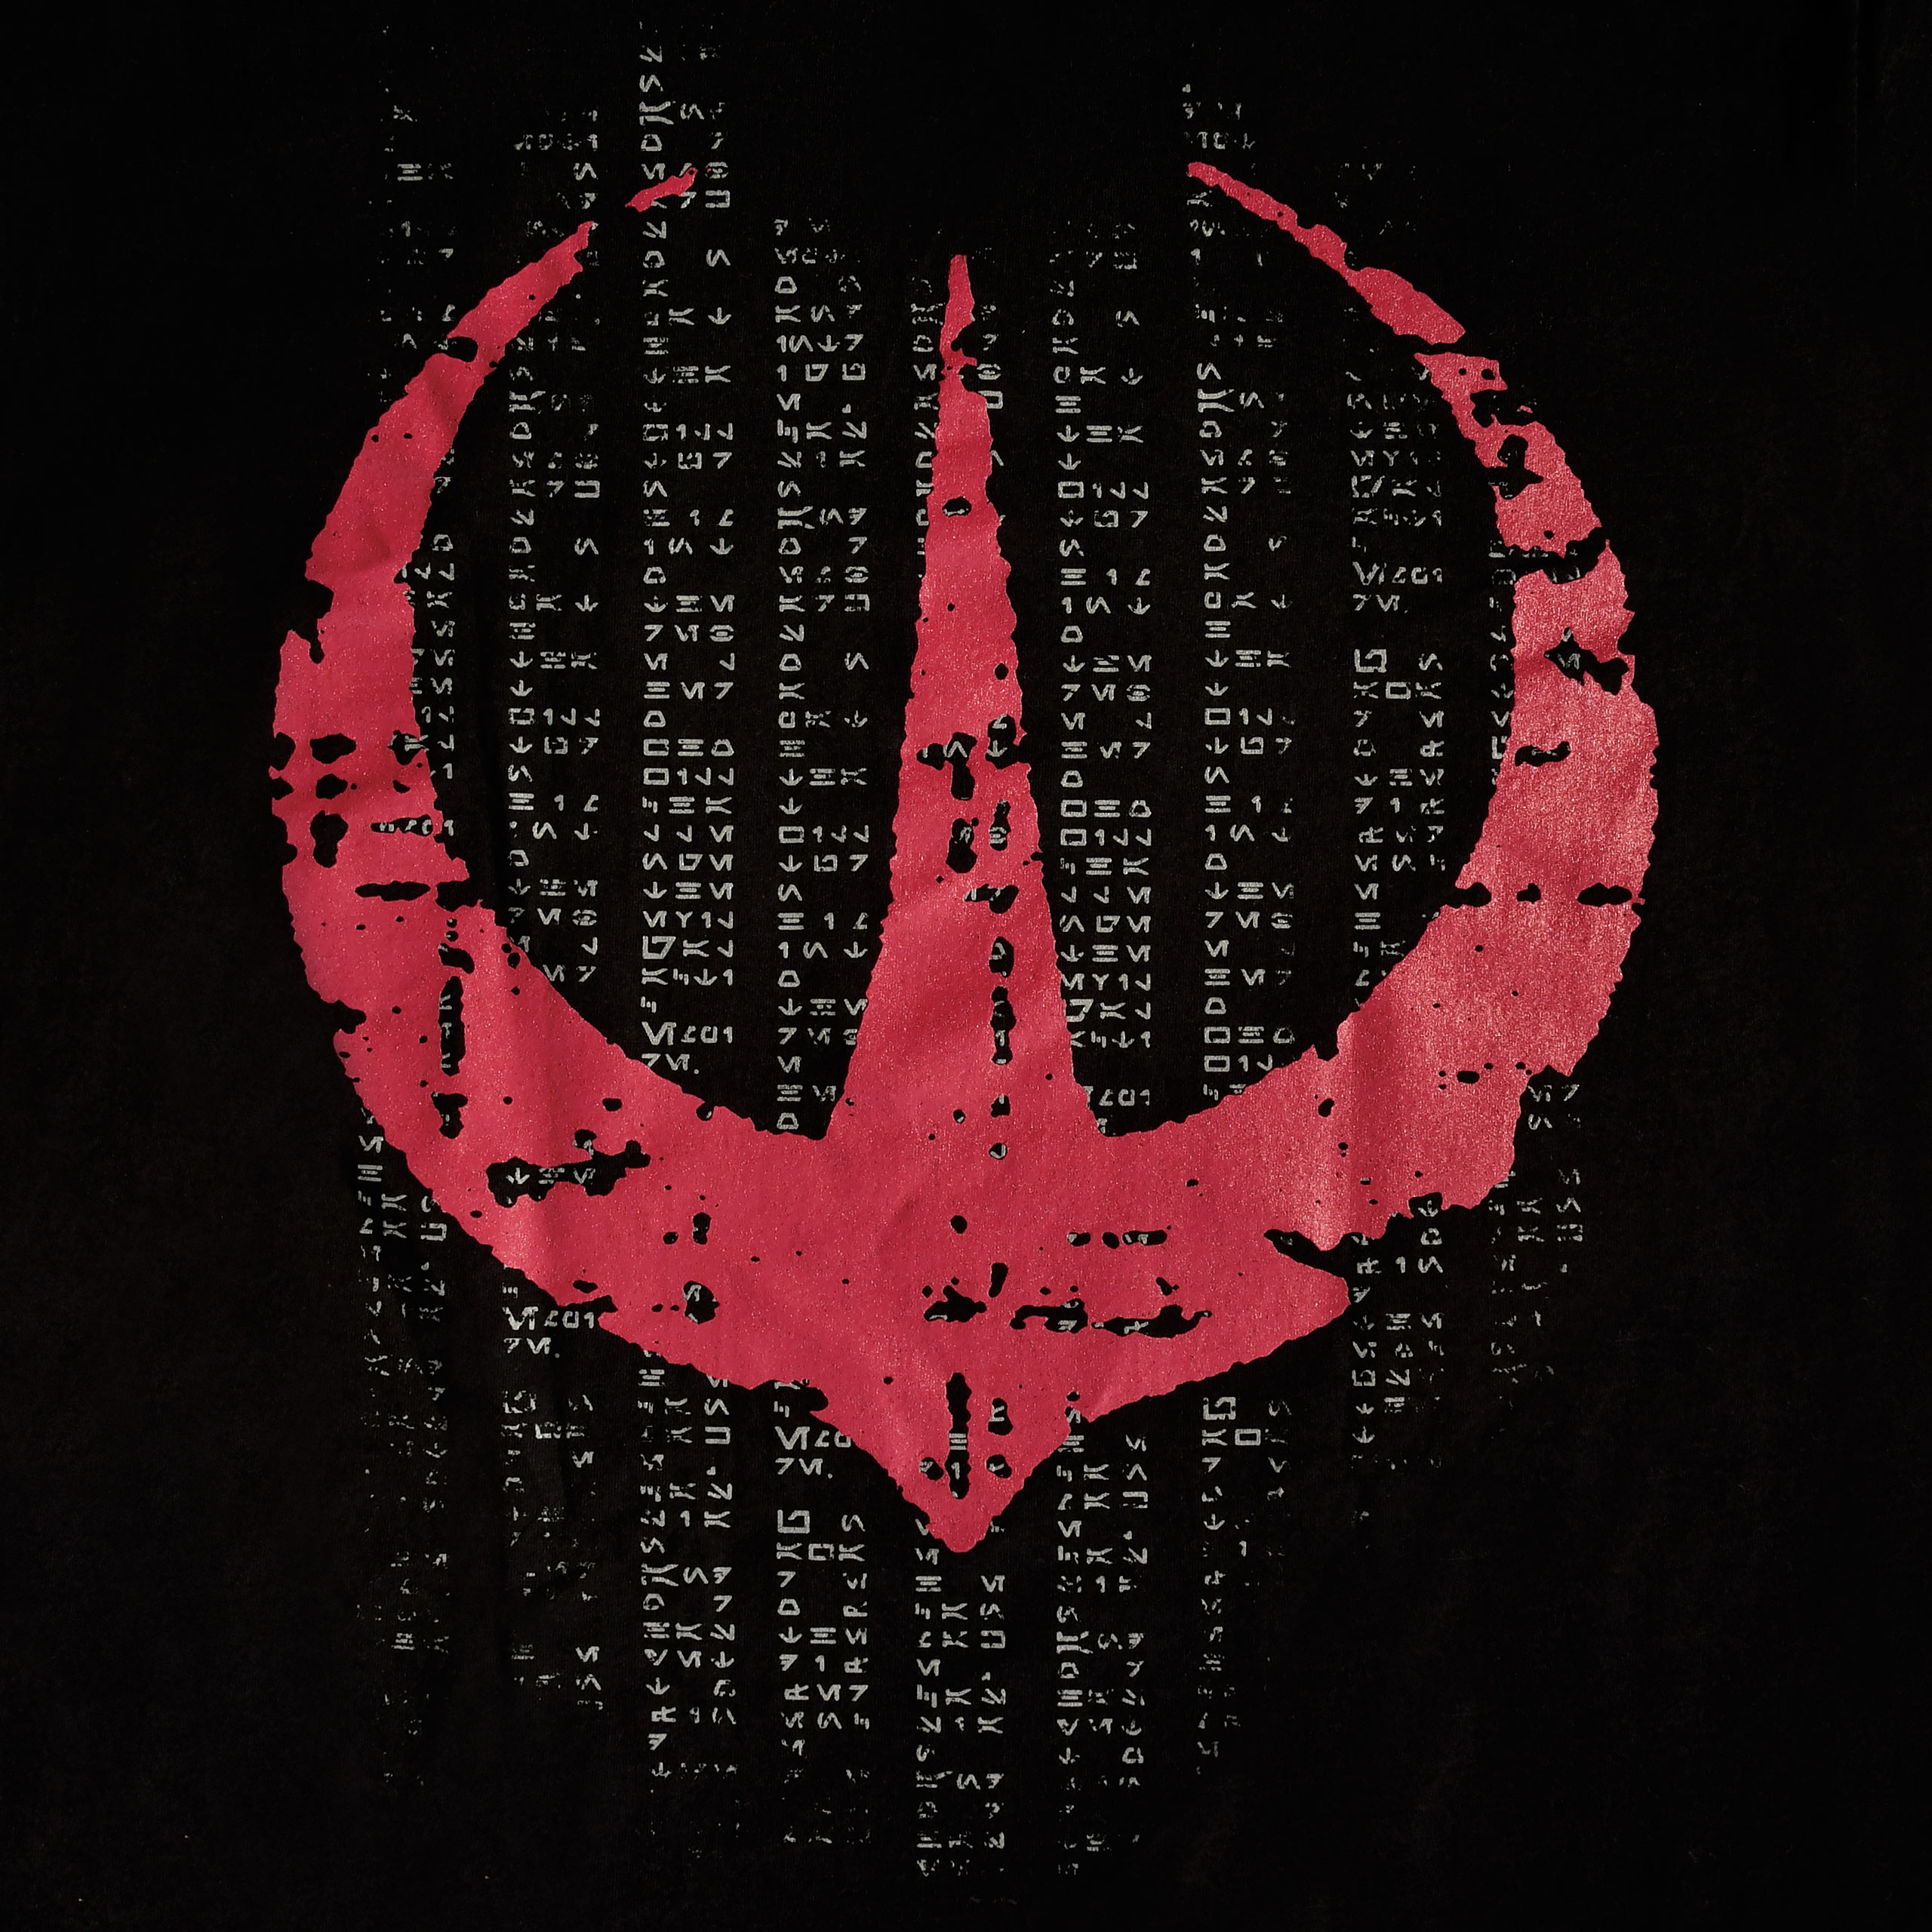 Star Wars - Andor Voor De Rebellie T-Shirt zwart